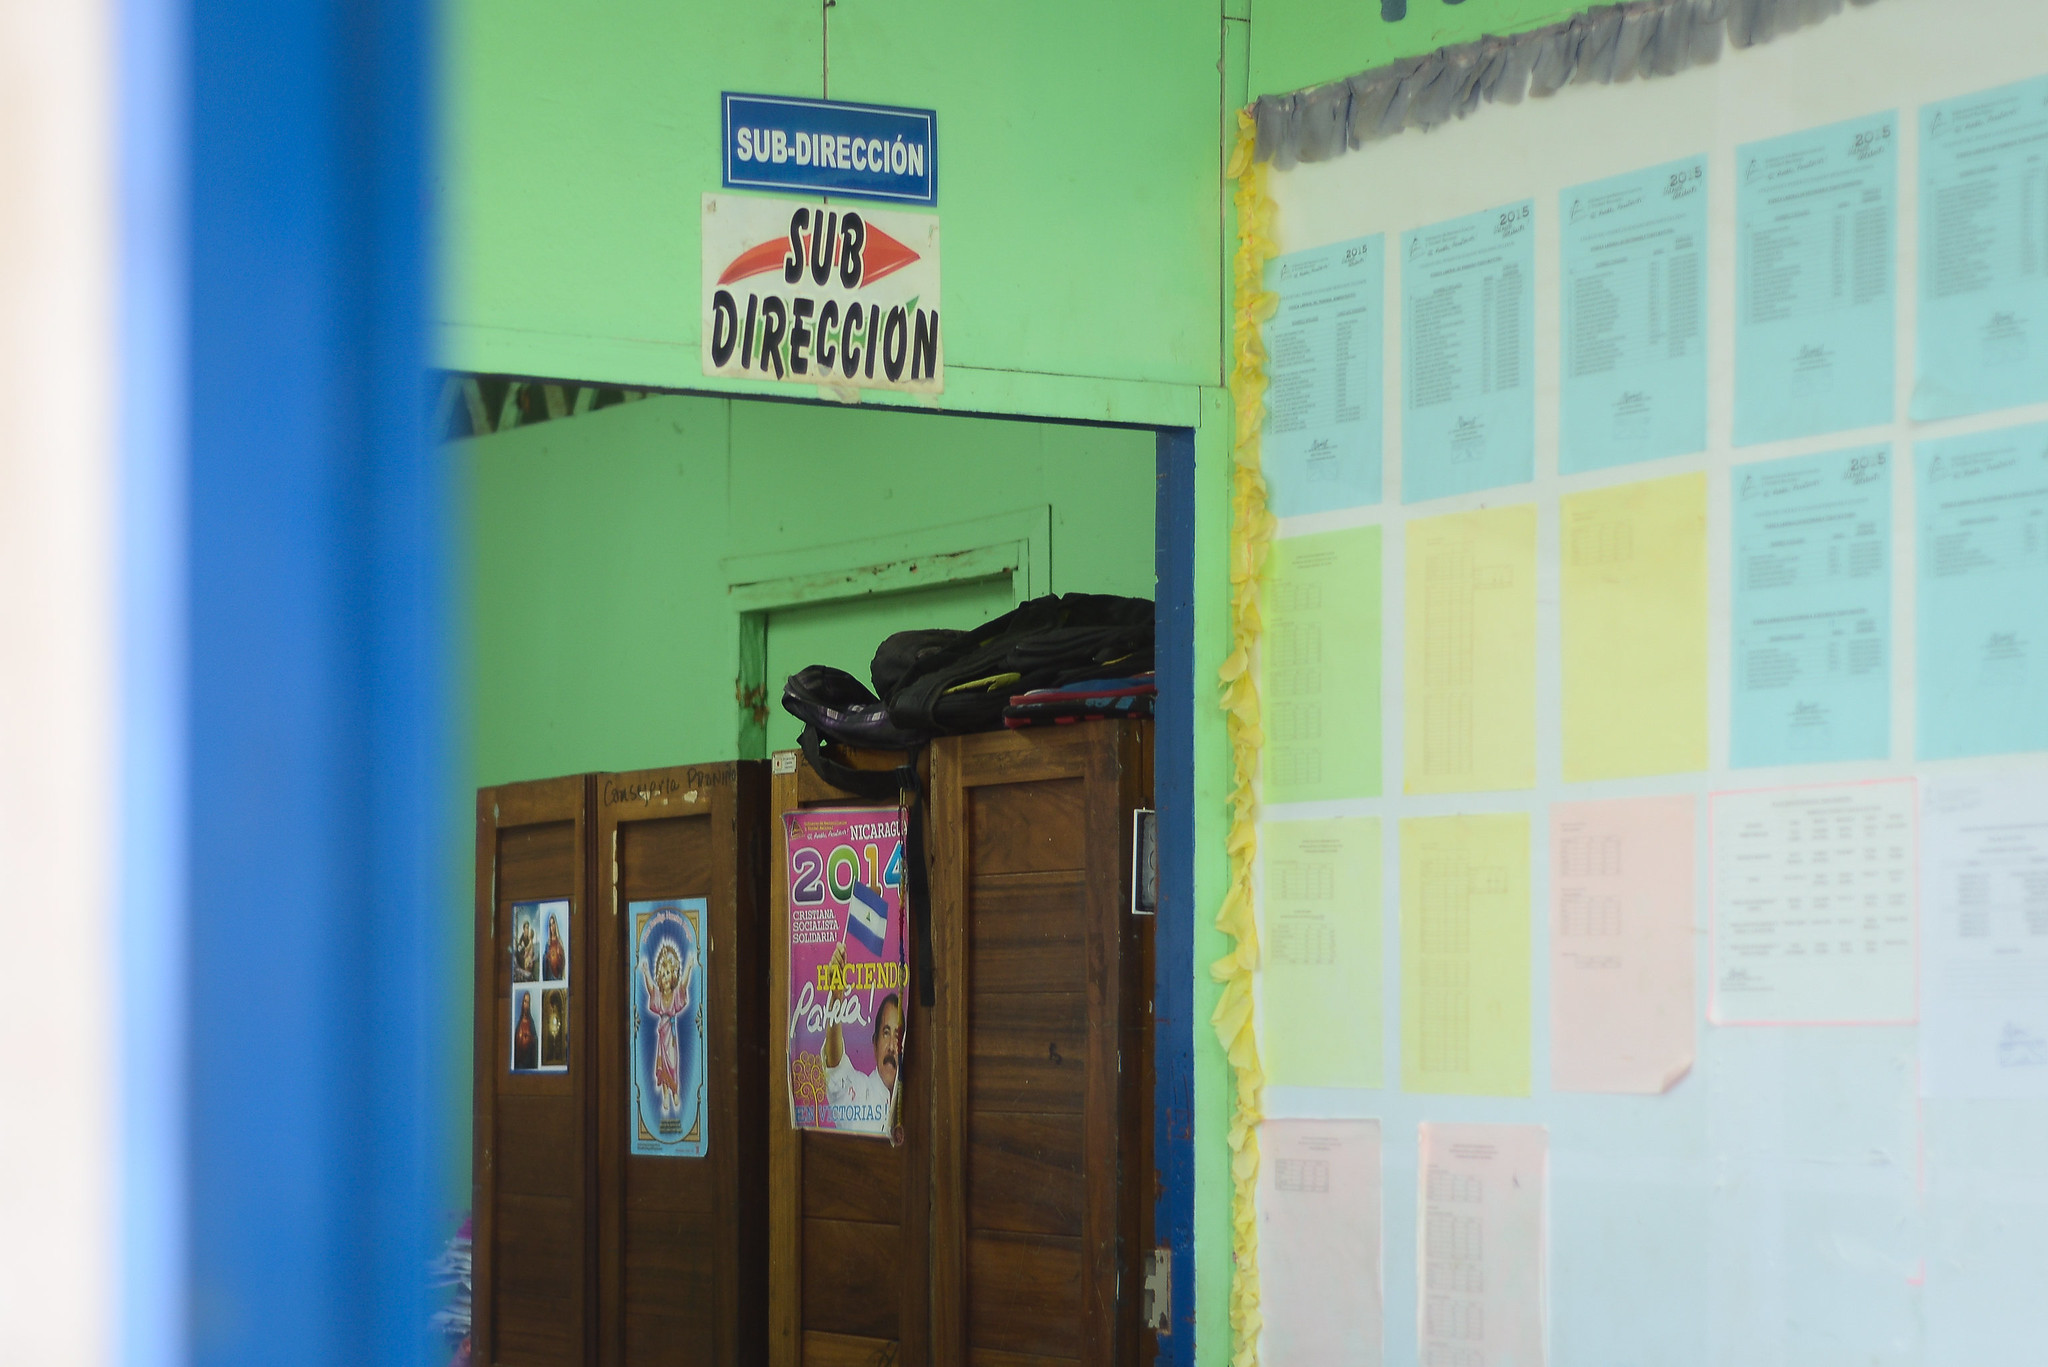 Educación aplazada en Nicaragua: Ortega “ponchó” el sistema educativo